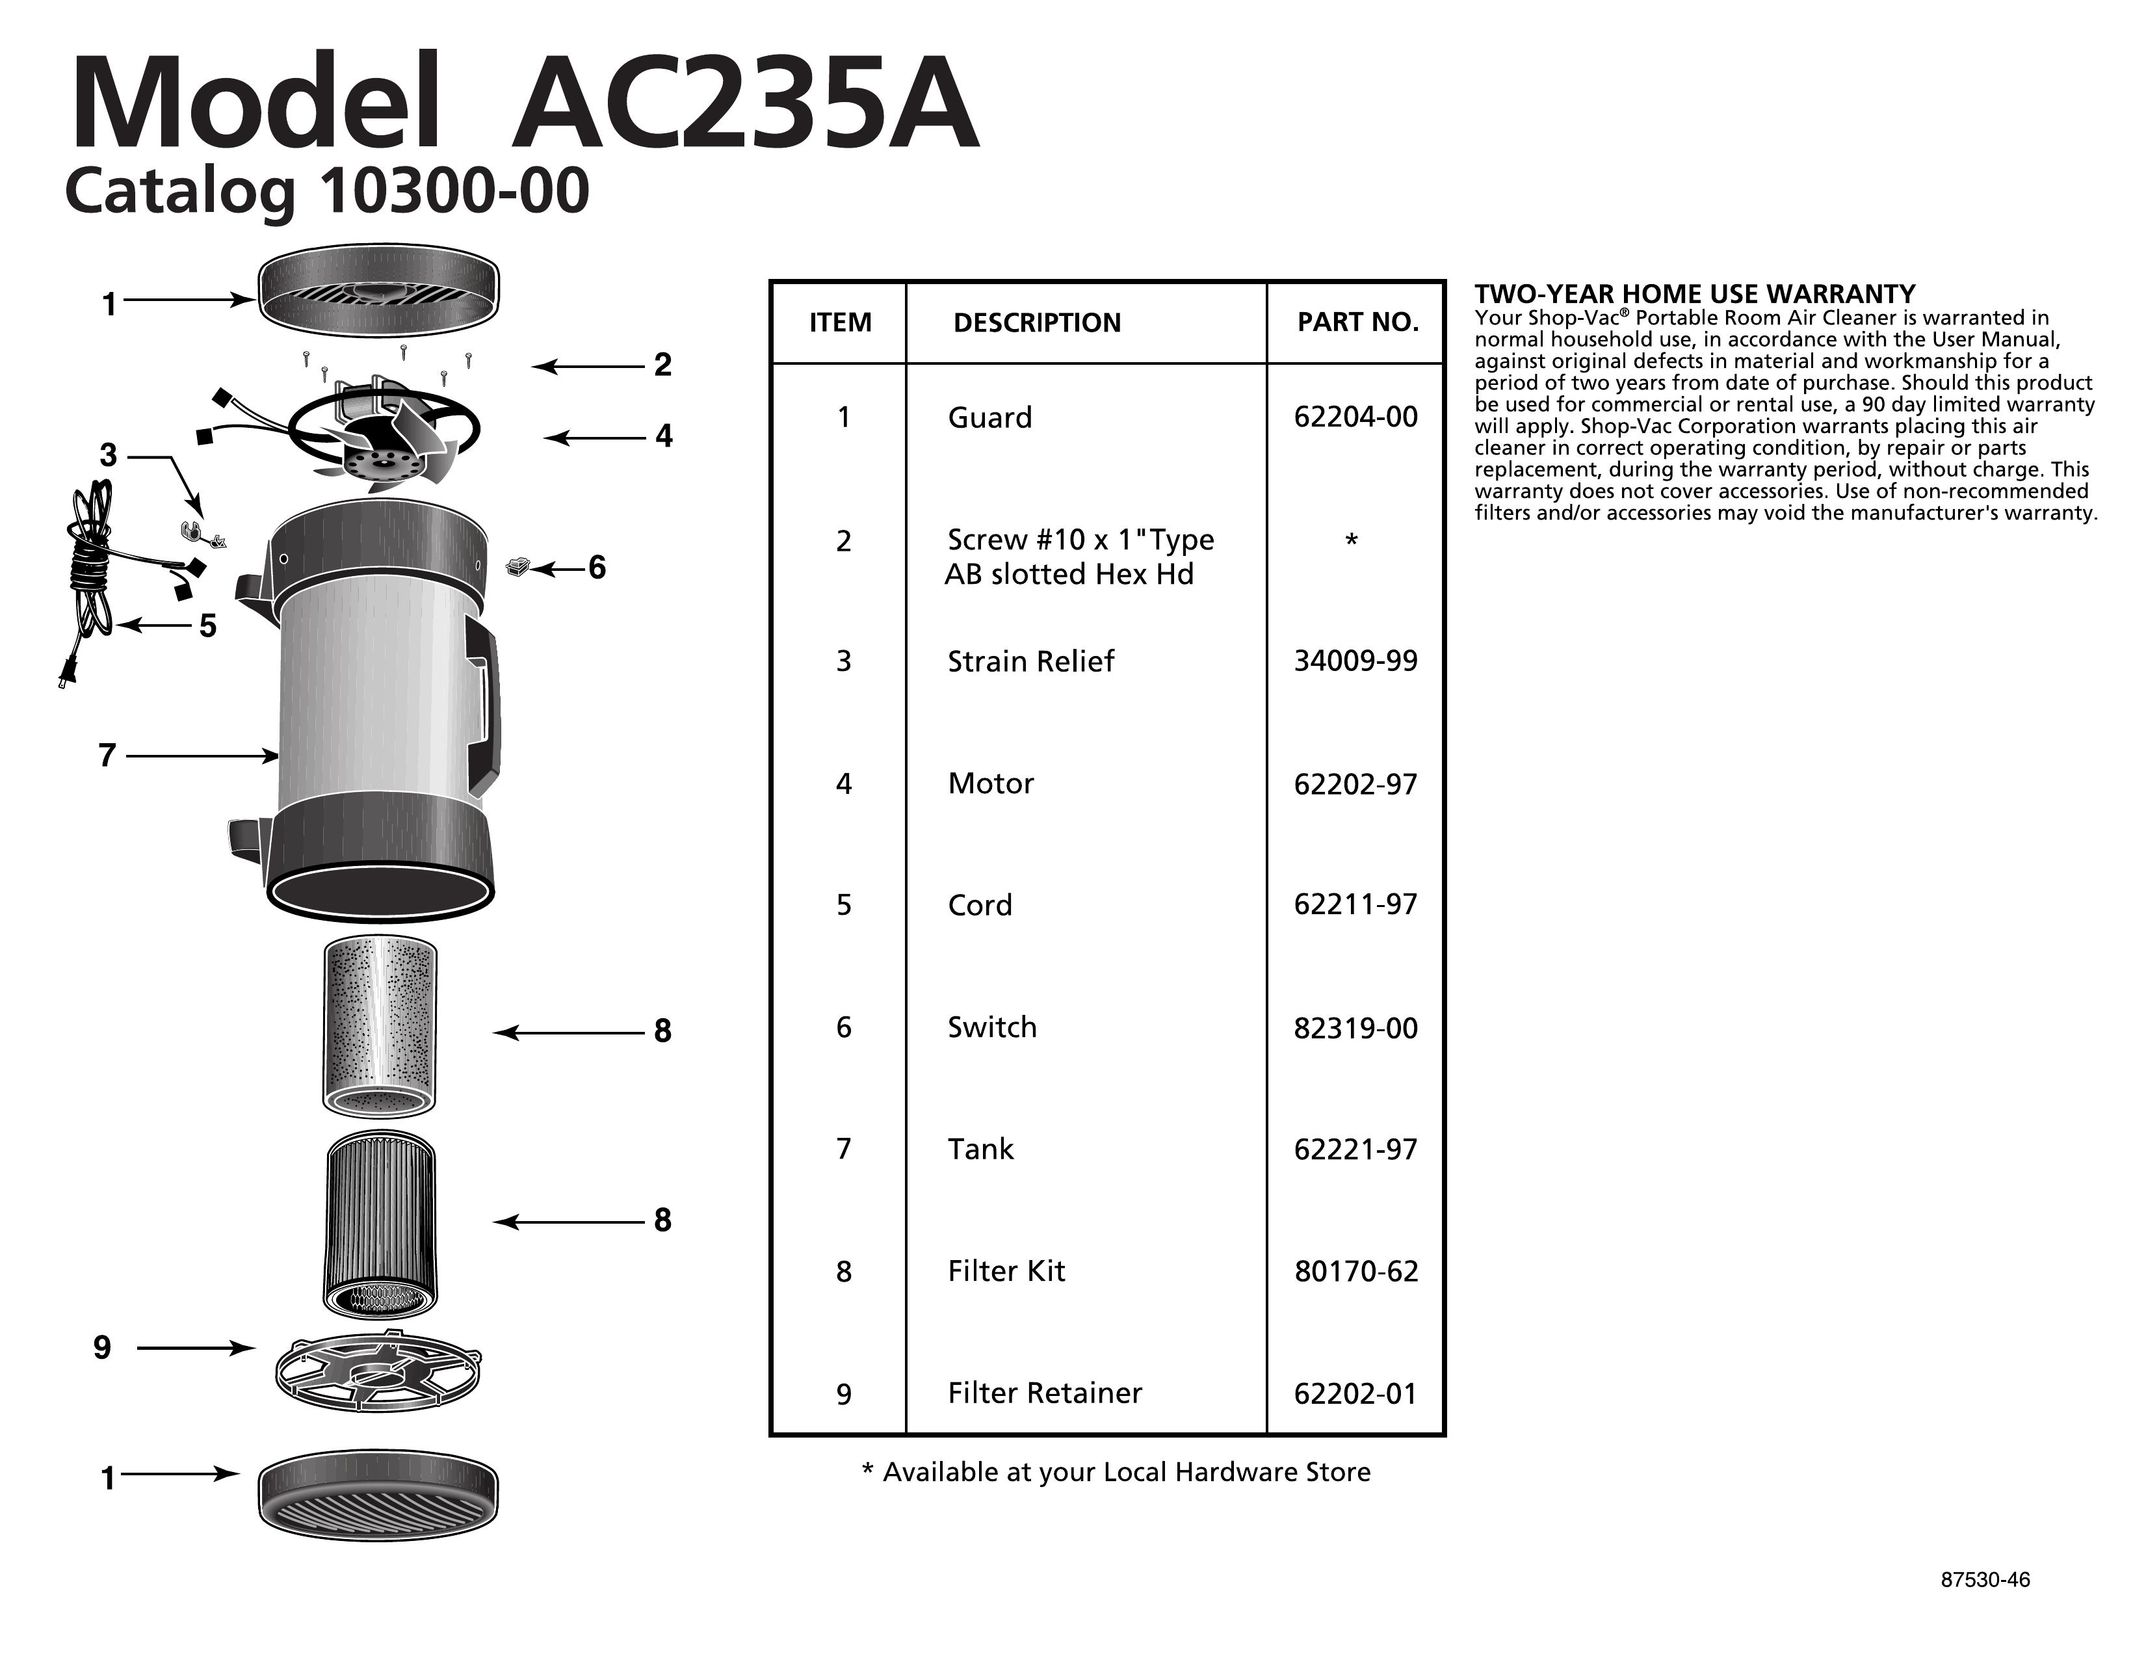 Shop-Vac AC235A Air Cleaner User Manual